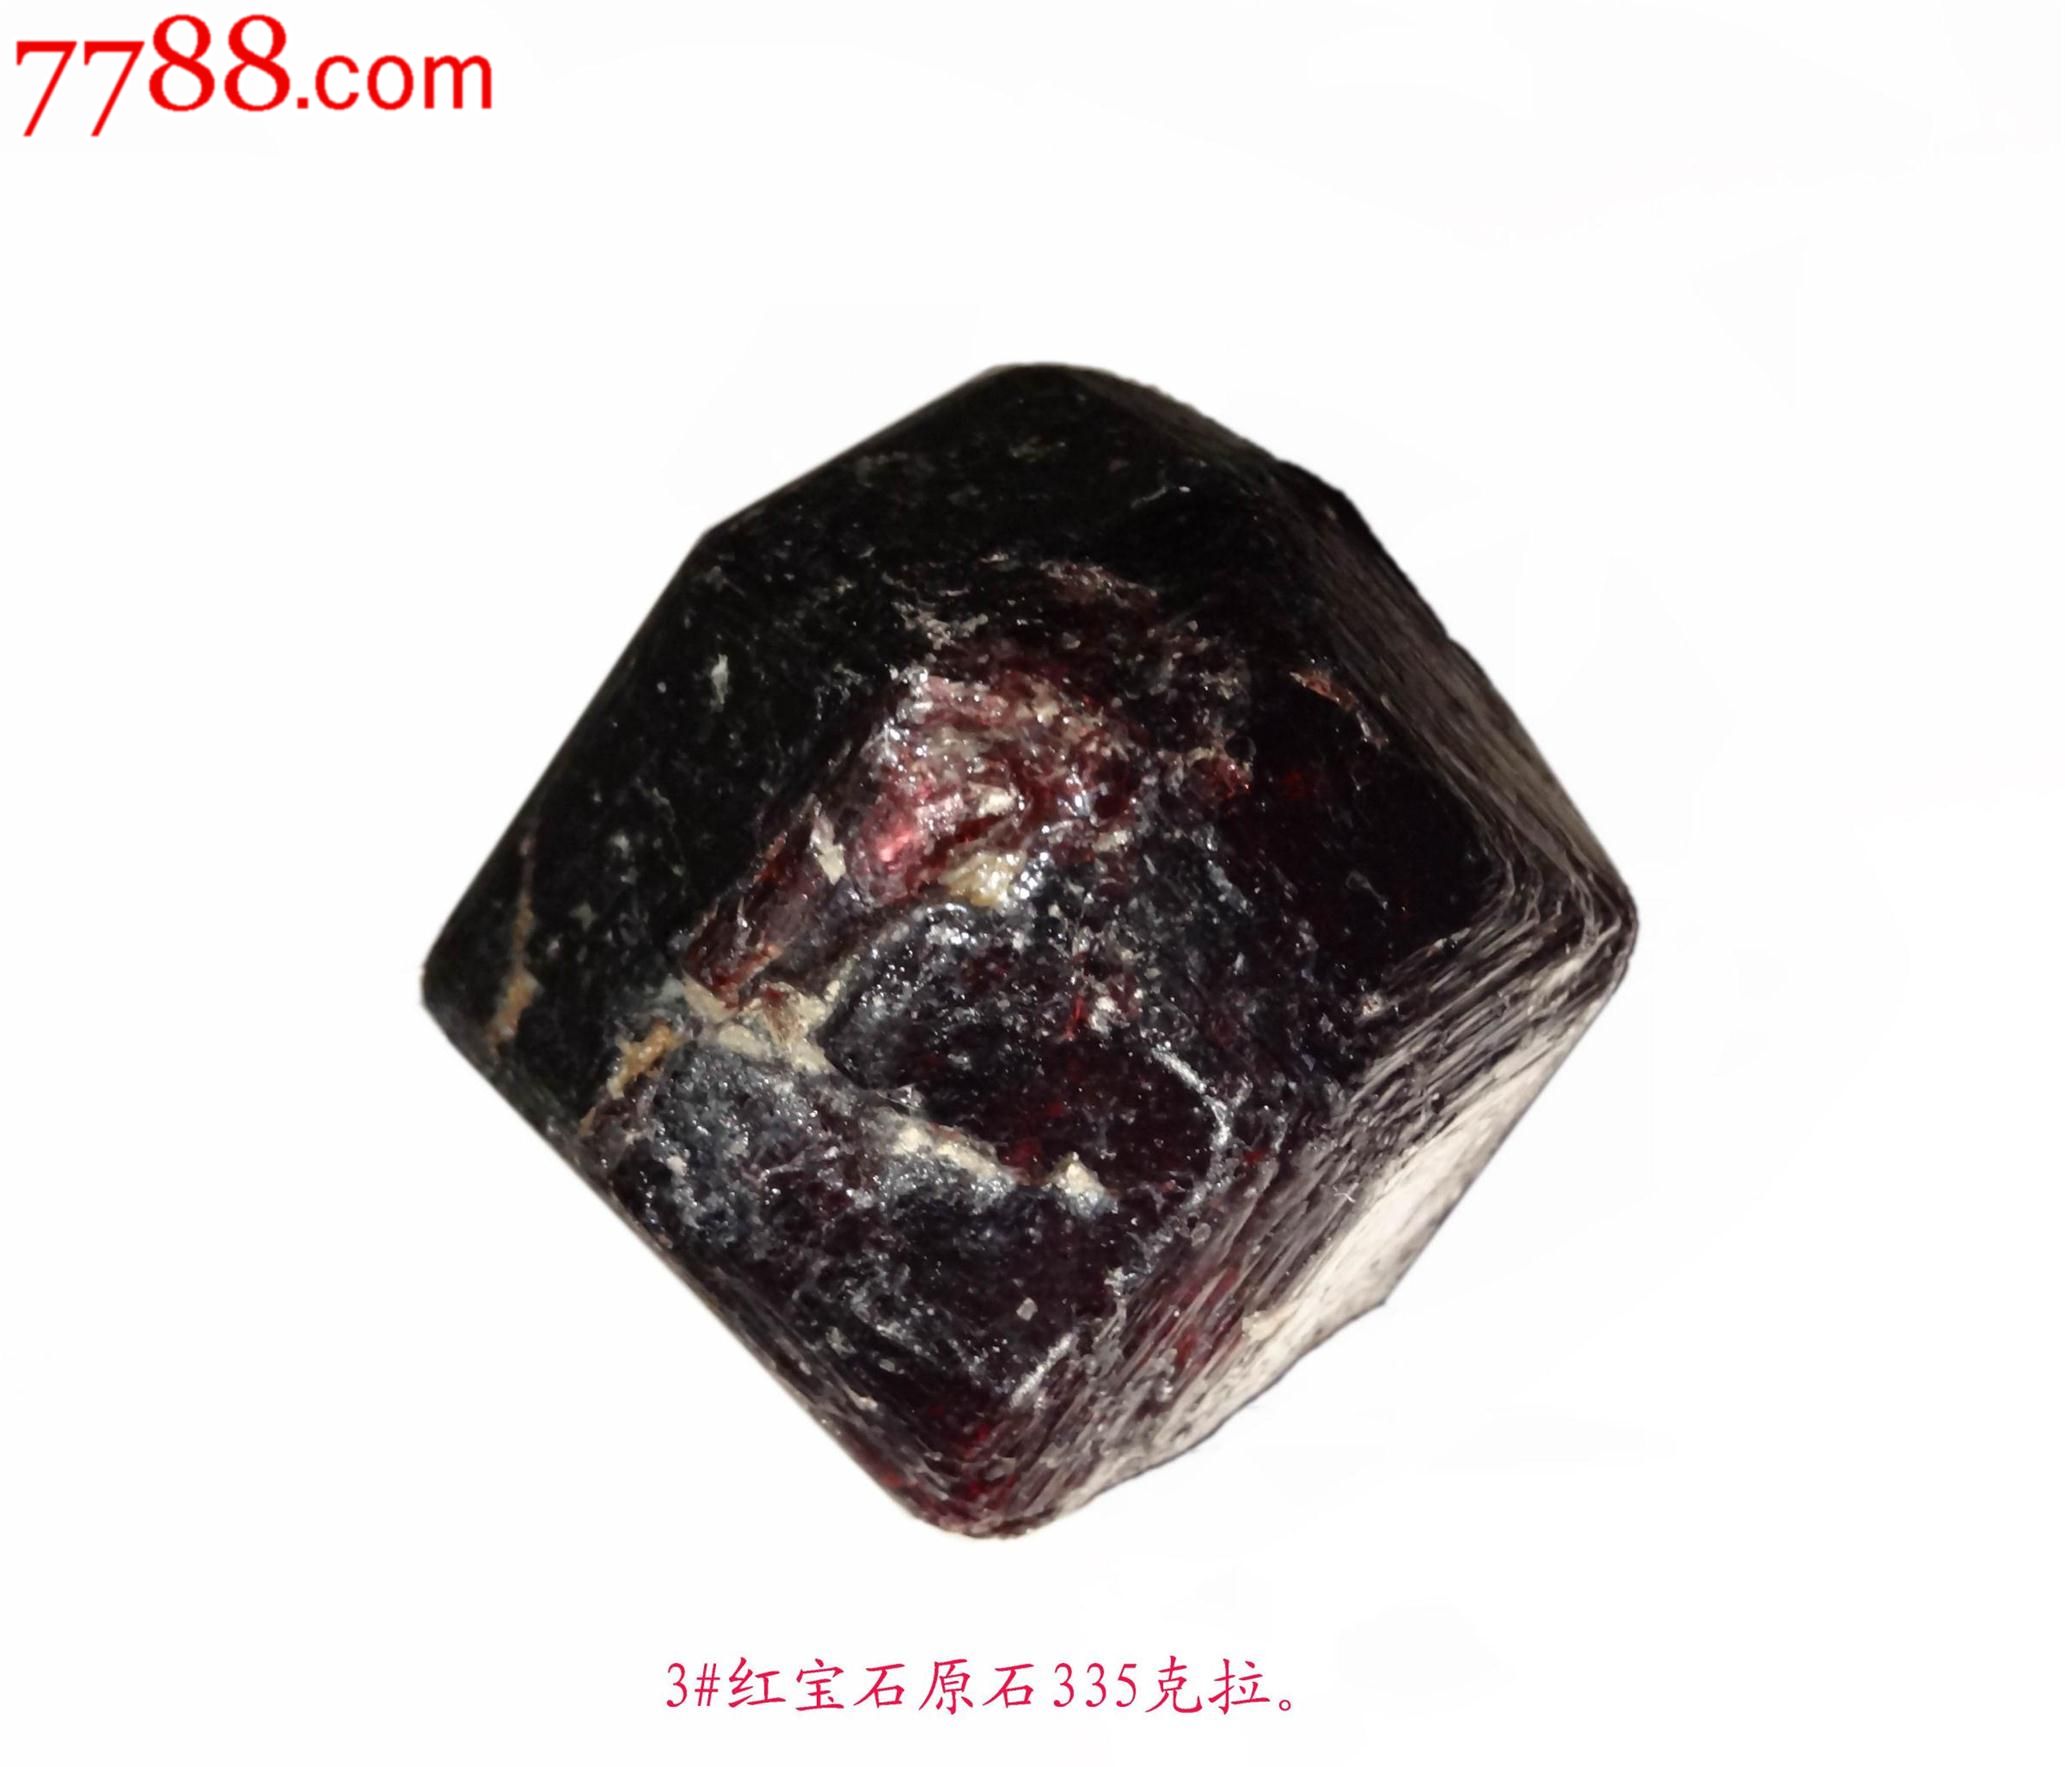 中国最大红宝石原石图片(中国最大红宝石原石图片及价格)